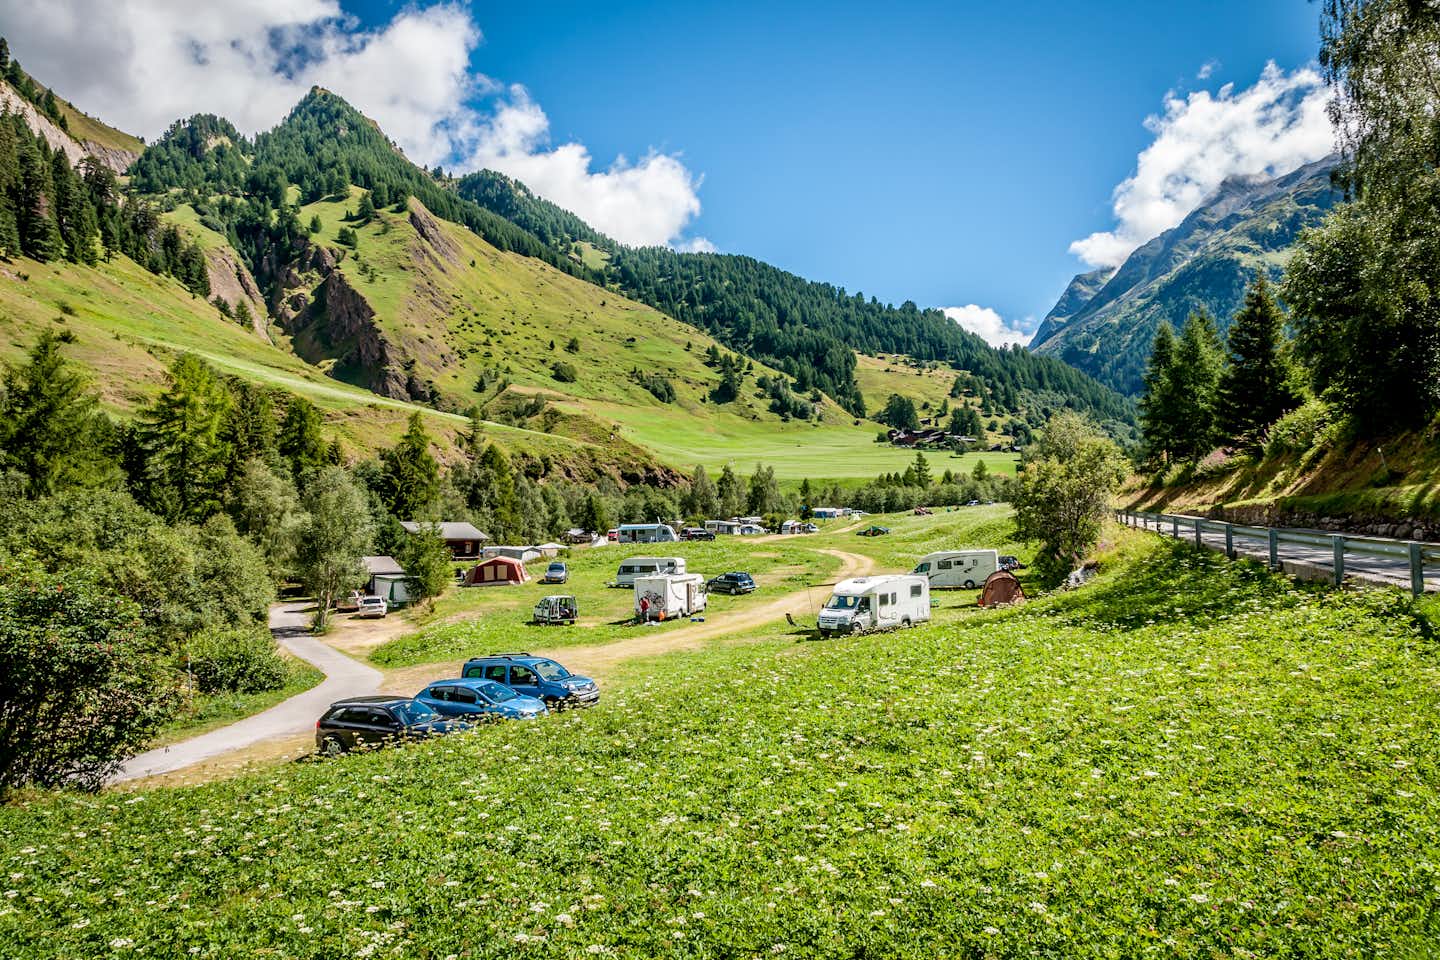 Camping Giessen  - Campingplatz im Landschaftspark Binntal mit Blick auf die Berge